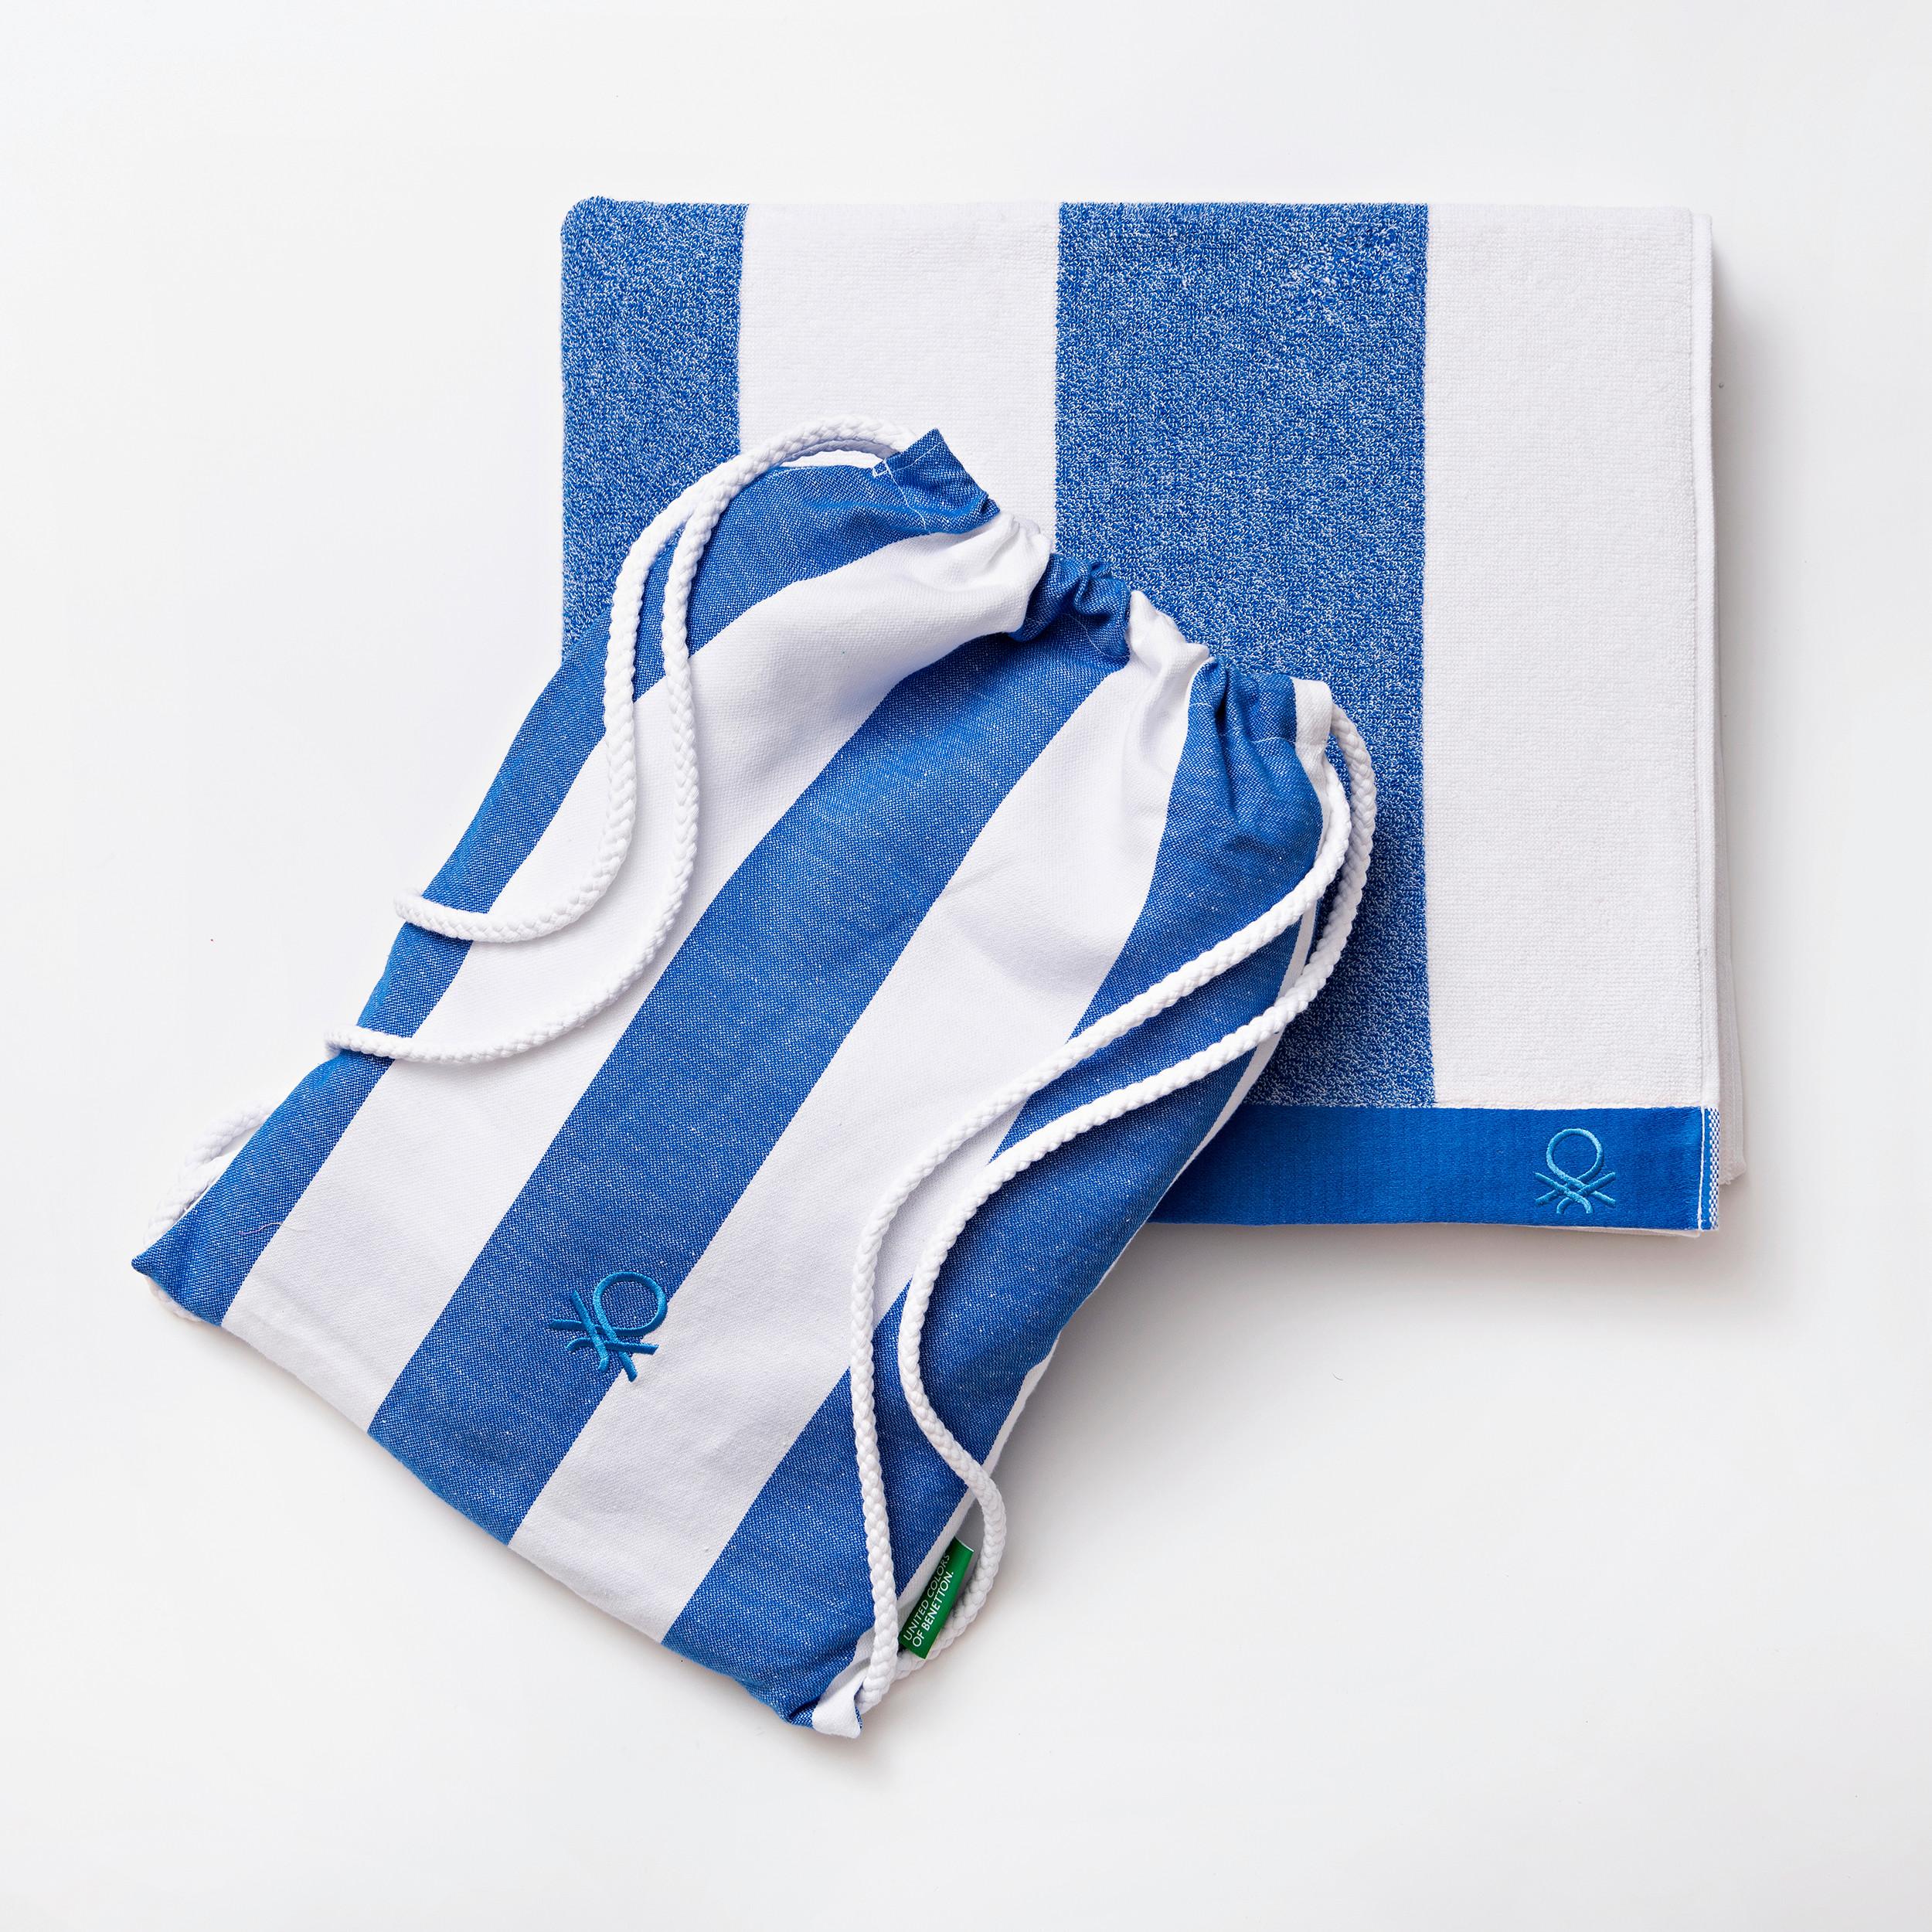 Strandtuch Baumwolle Blau/ Weiss 90x160 cm - Blau/Weiß, Basics, Textil (90/160/1,5cm) - Benetton